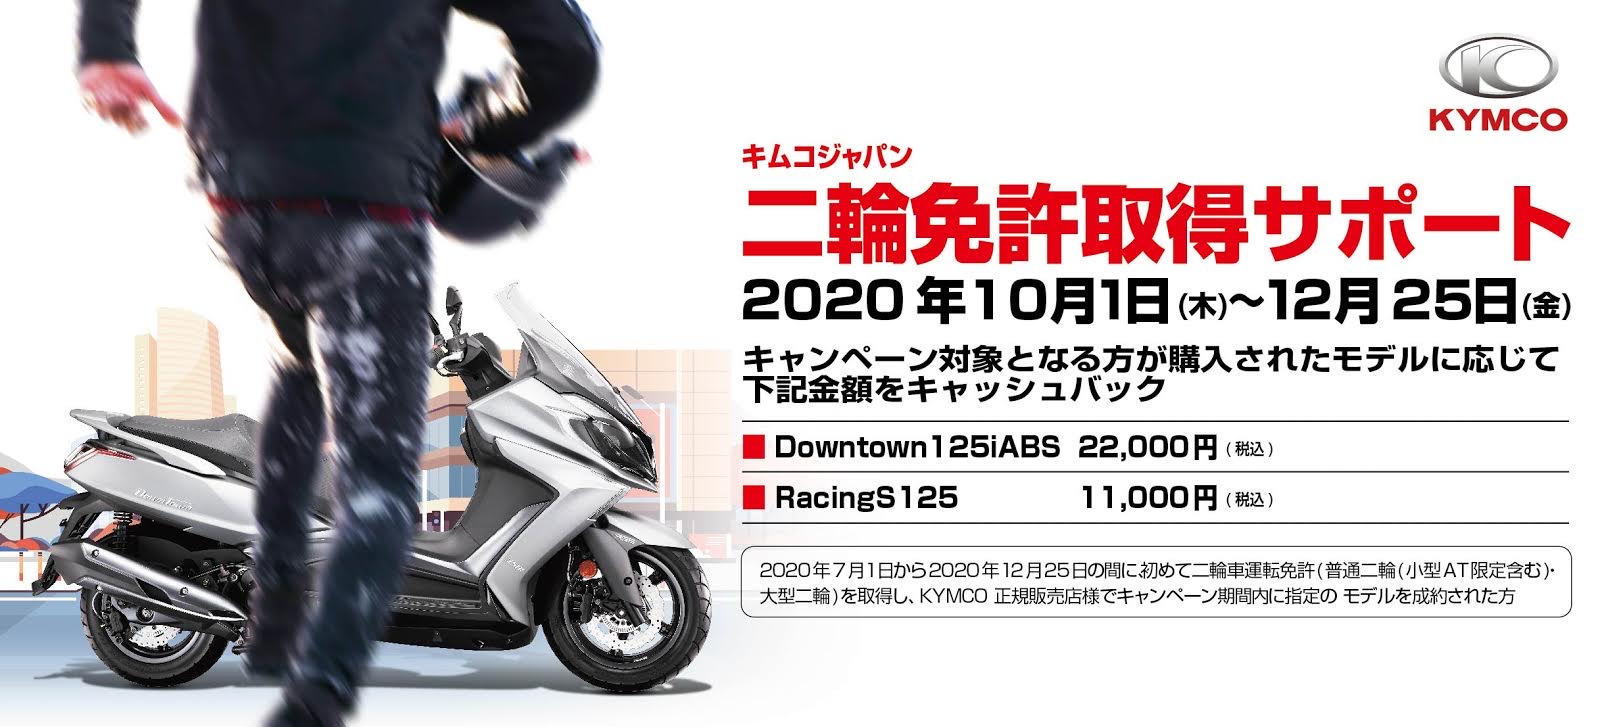 キムコジャパン 二輪免許取得サポートキャンペーンを開催